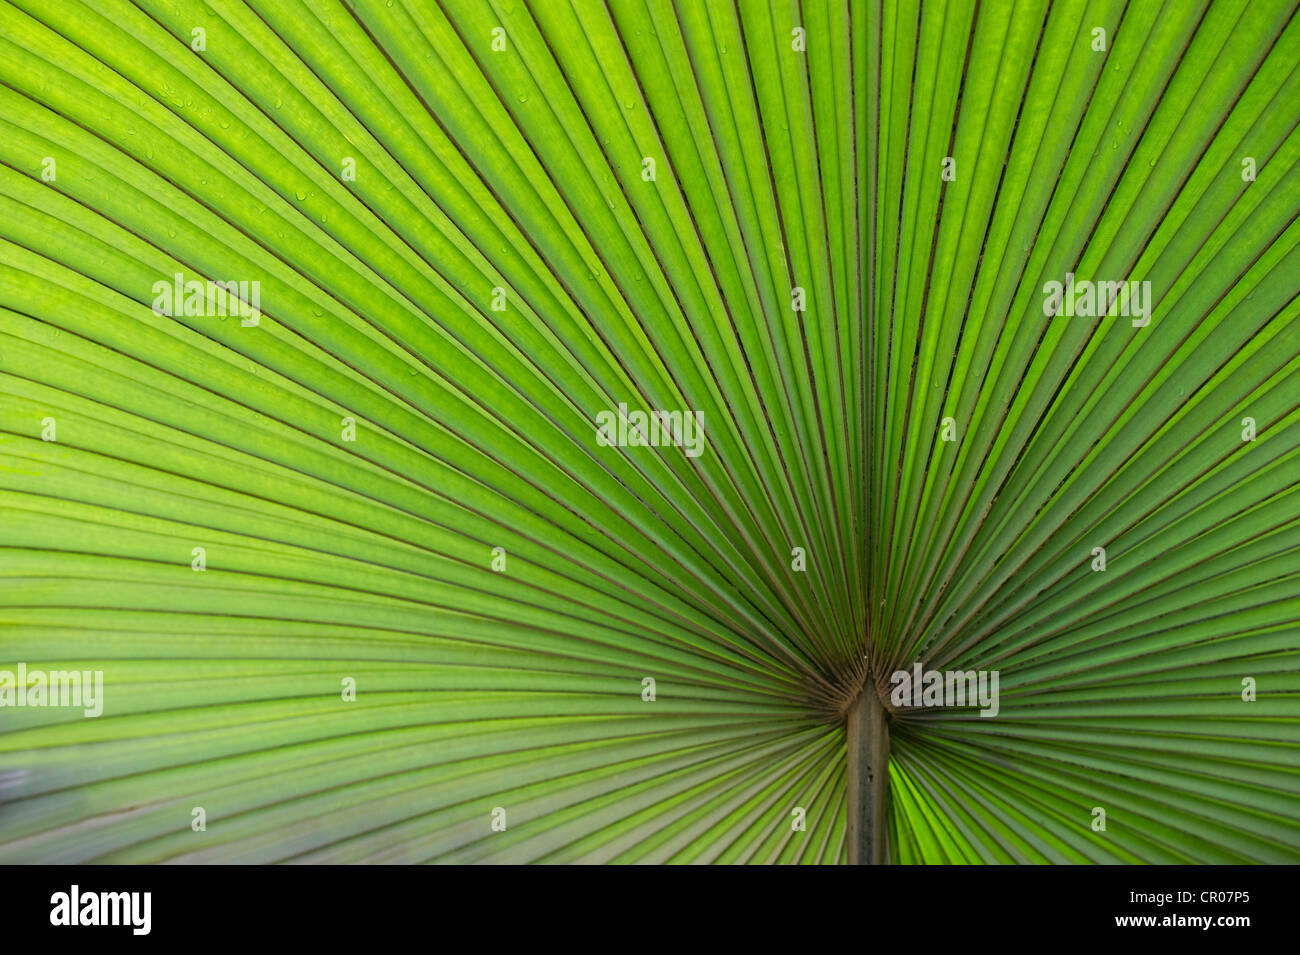 La Californie du Nord, Washingtonia Washingtonia, Californie Washingtonia filifera pal (ventilateur), feuille de palmier Banque D'Images